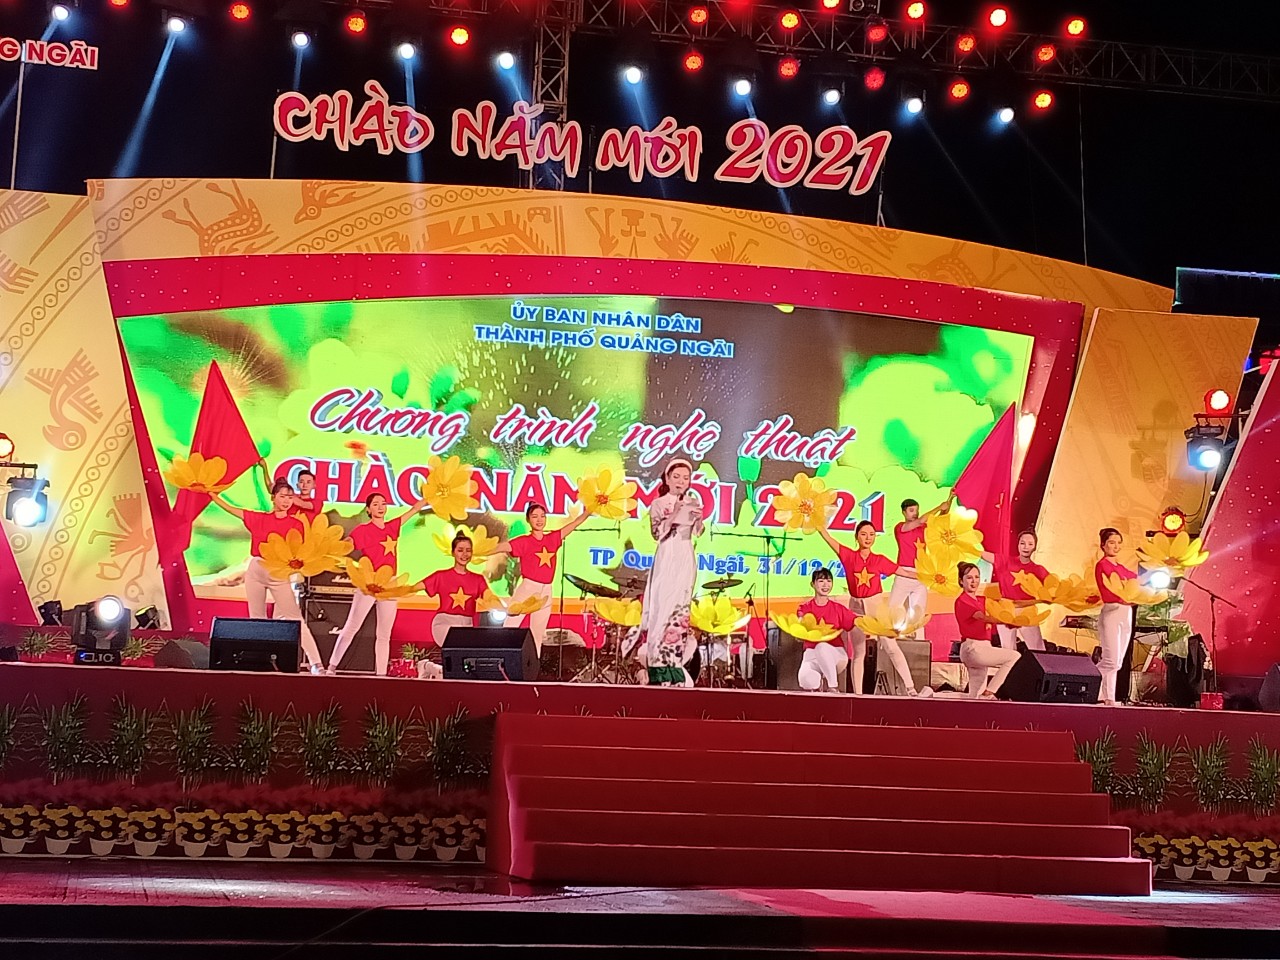 Thành phố Quảng Ngãi tổ chức Chương trình nghệ thuật “ Chào năm mới” 2021